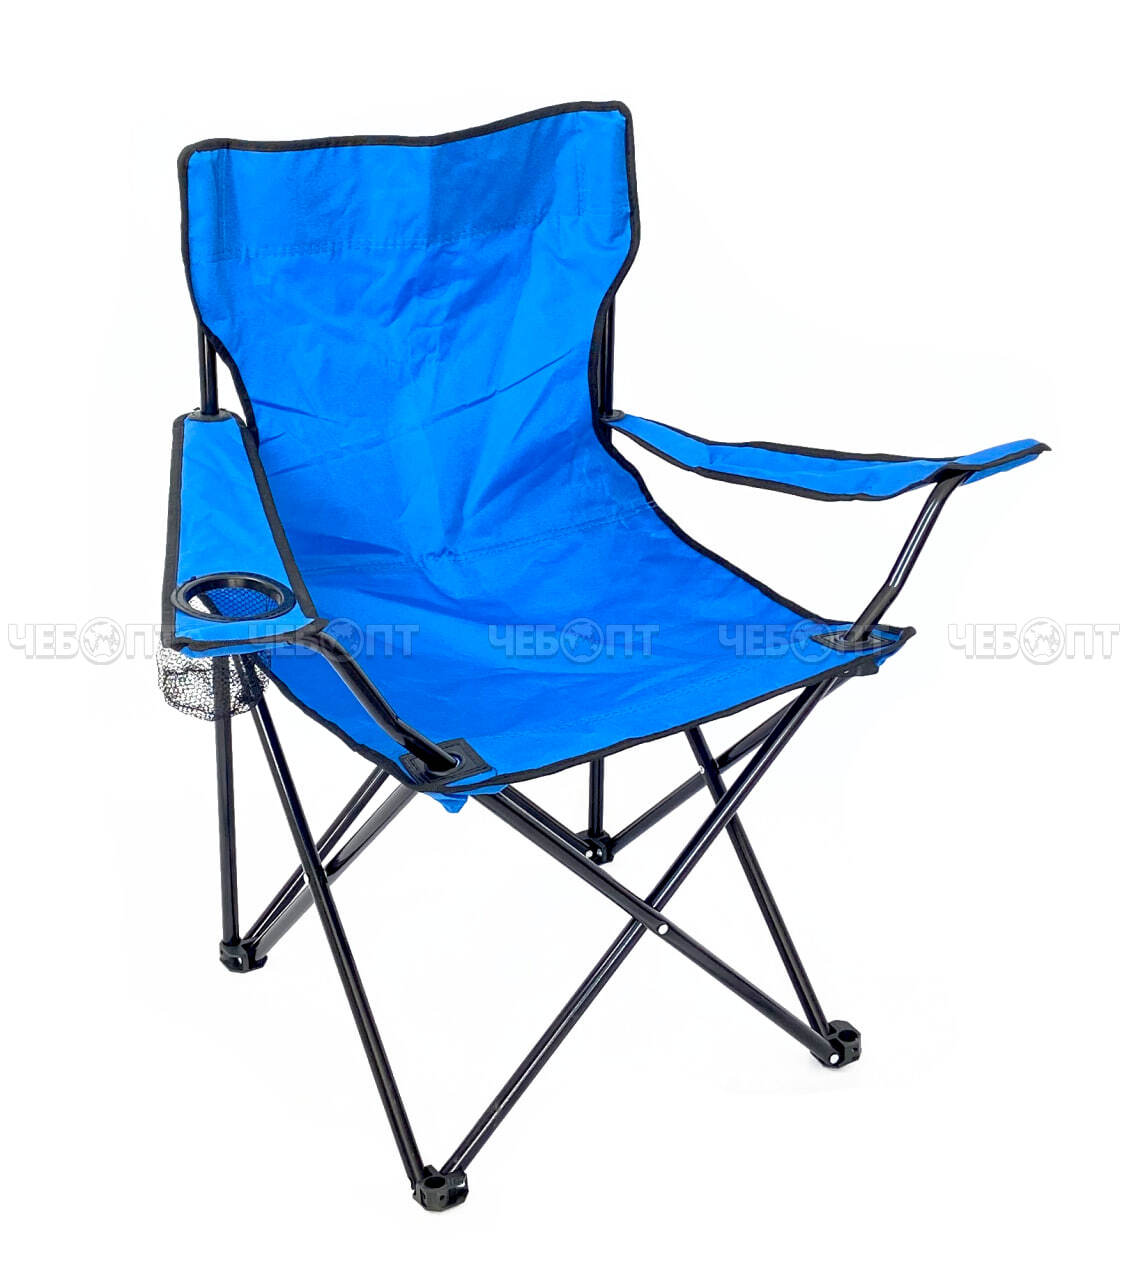 Кресло - складное походное 500*500*800 мм, ткань оксфорд 600D, нагрузка до 100 кг, цвета в ассортименте арт. 290026 $ [10] GOODSEE МПС. ЧЕБОПТ.